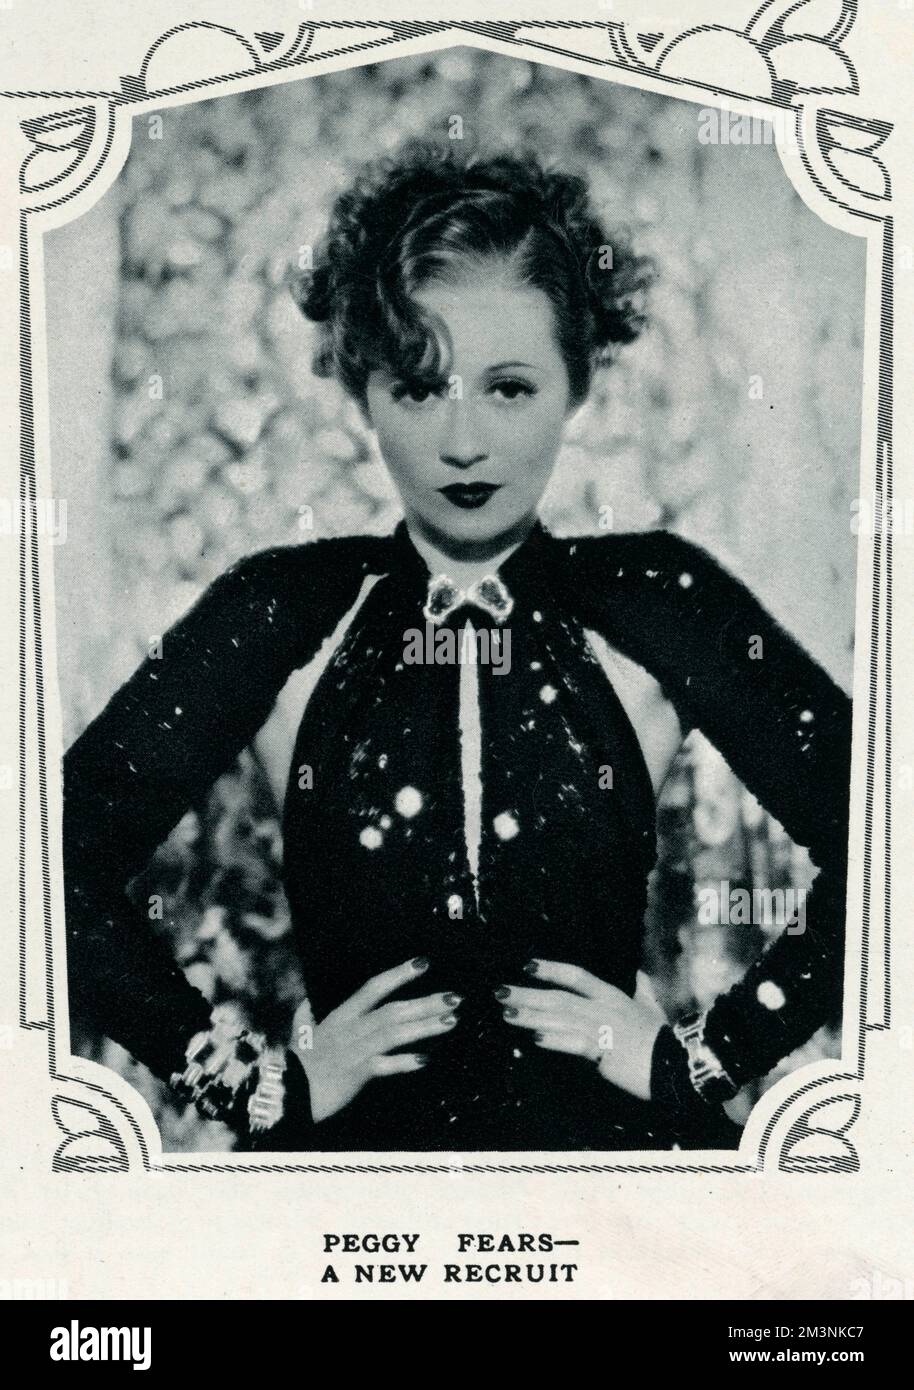 Peggy Fears (1903 - 1994), amerikanische Schauspielerin, die in den 1920er und 1930er Jahren in Broadway-Komödien auftrat. Datum: 1934 Stockfoto